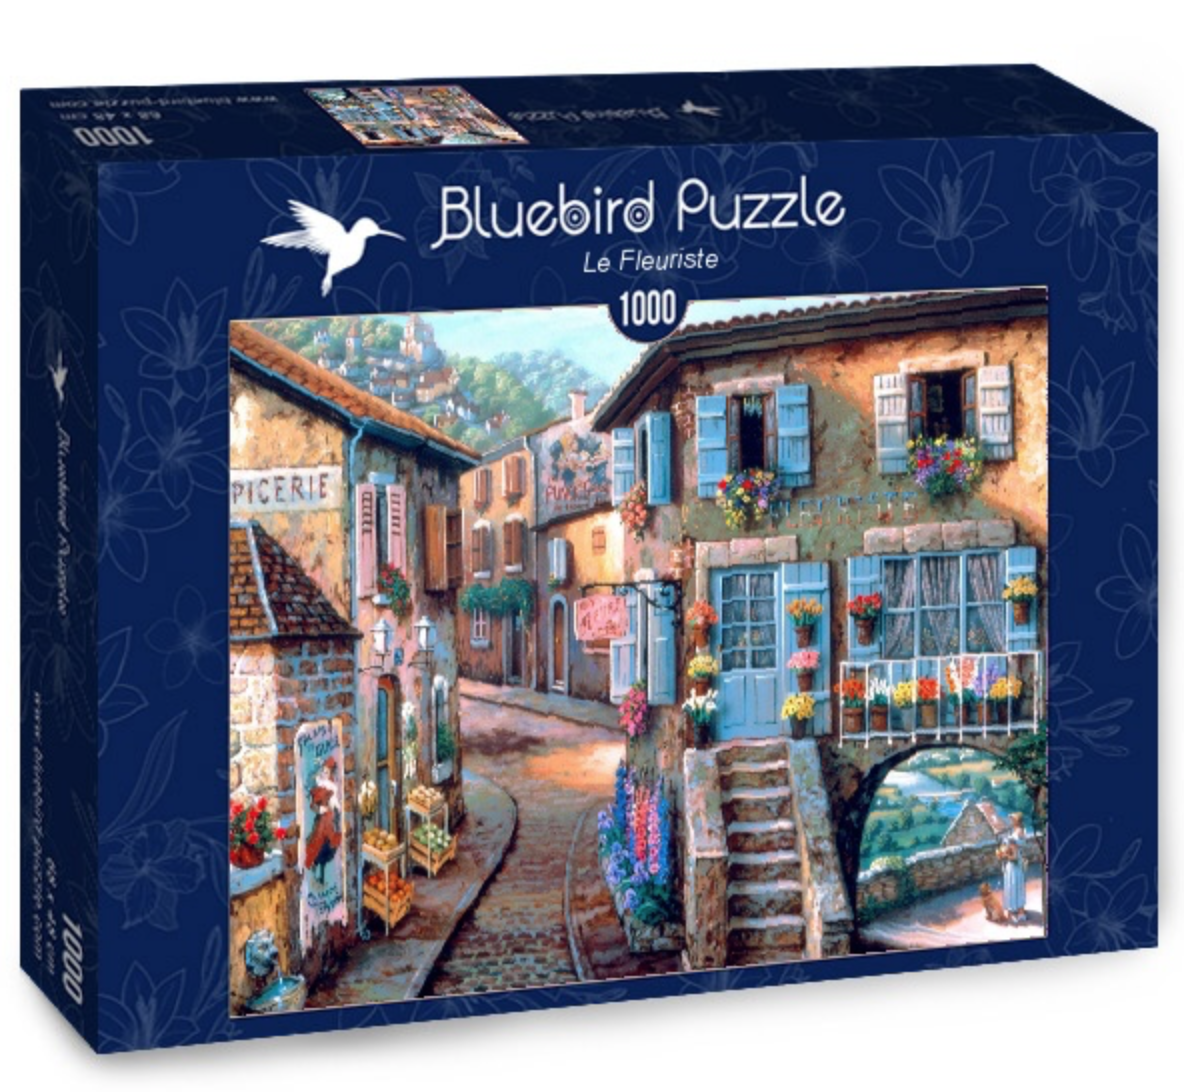 Voordelig Bluebird Puzzles kopen? Brede keuze! - Puzzels123